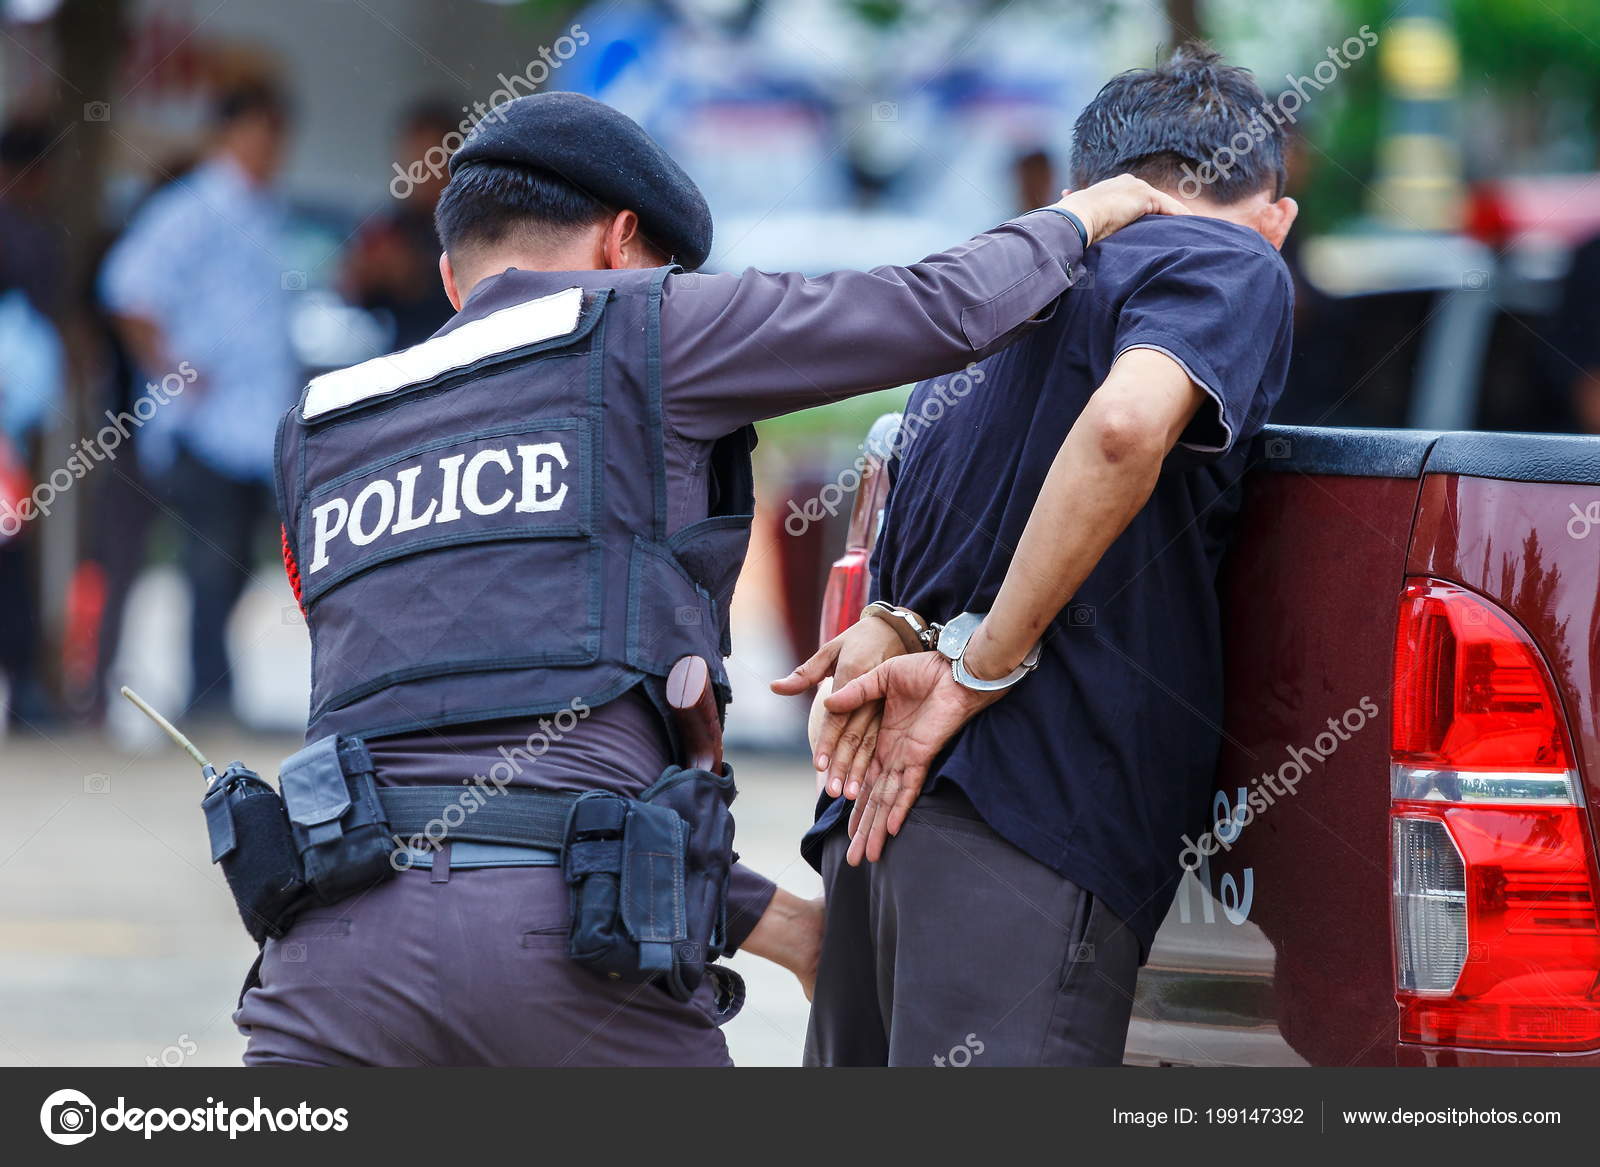 police arrest handcuffs